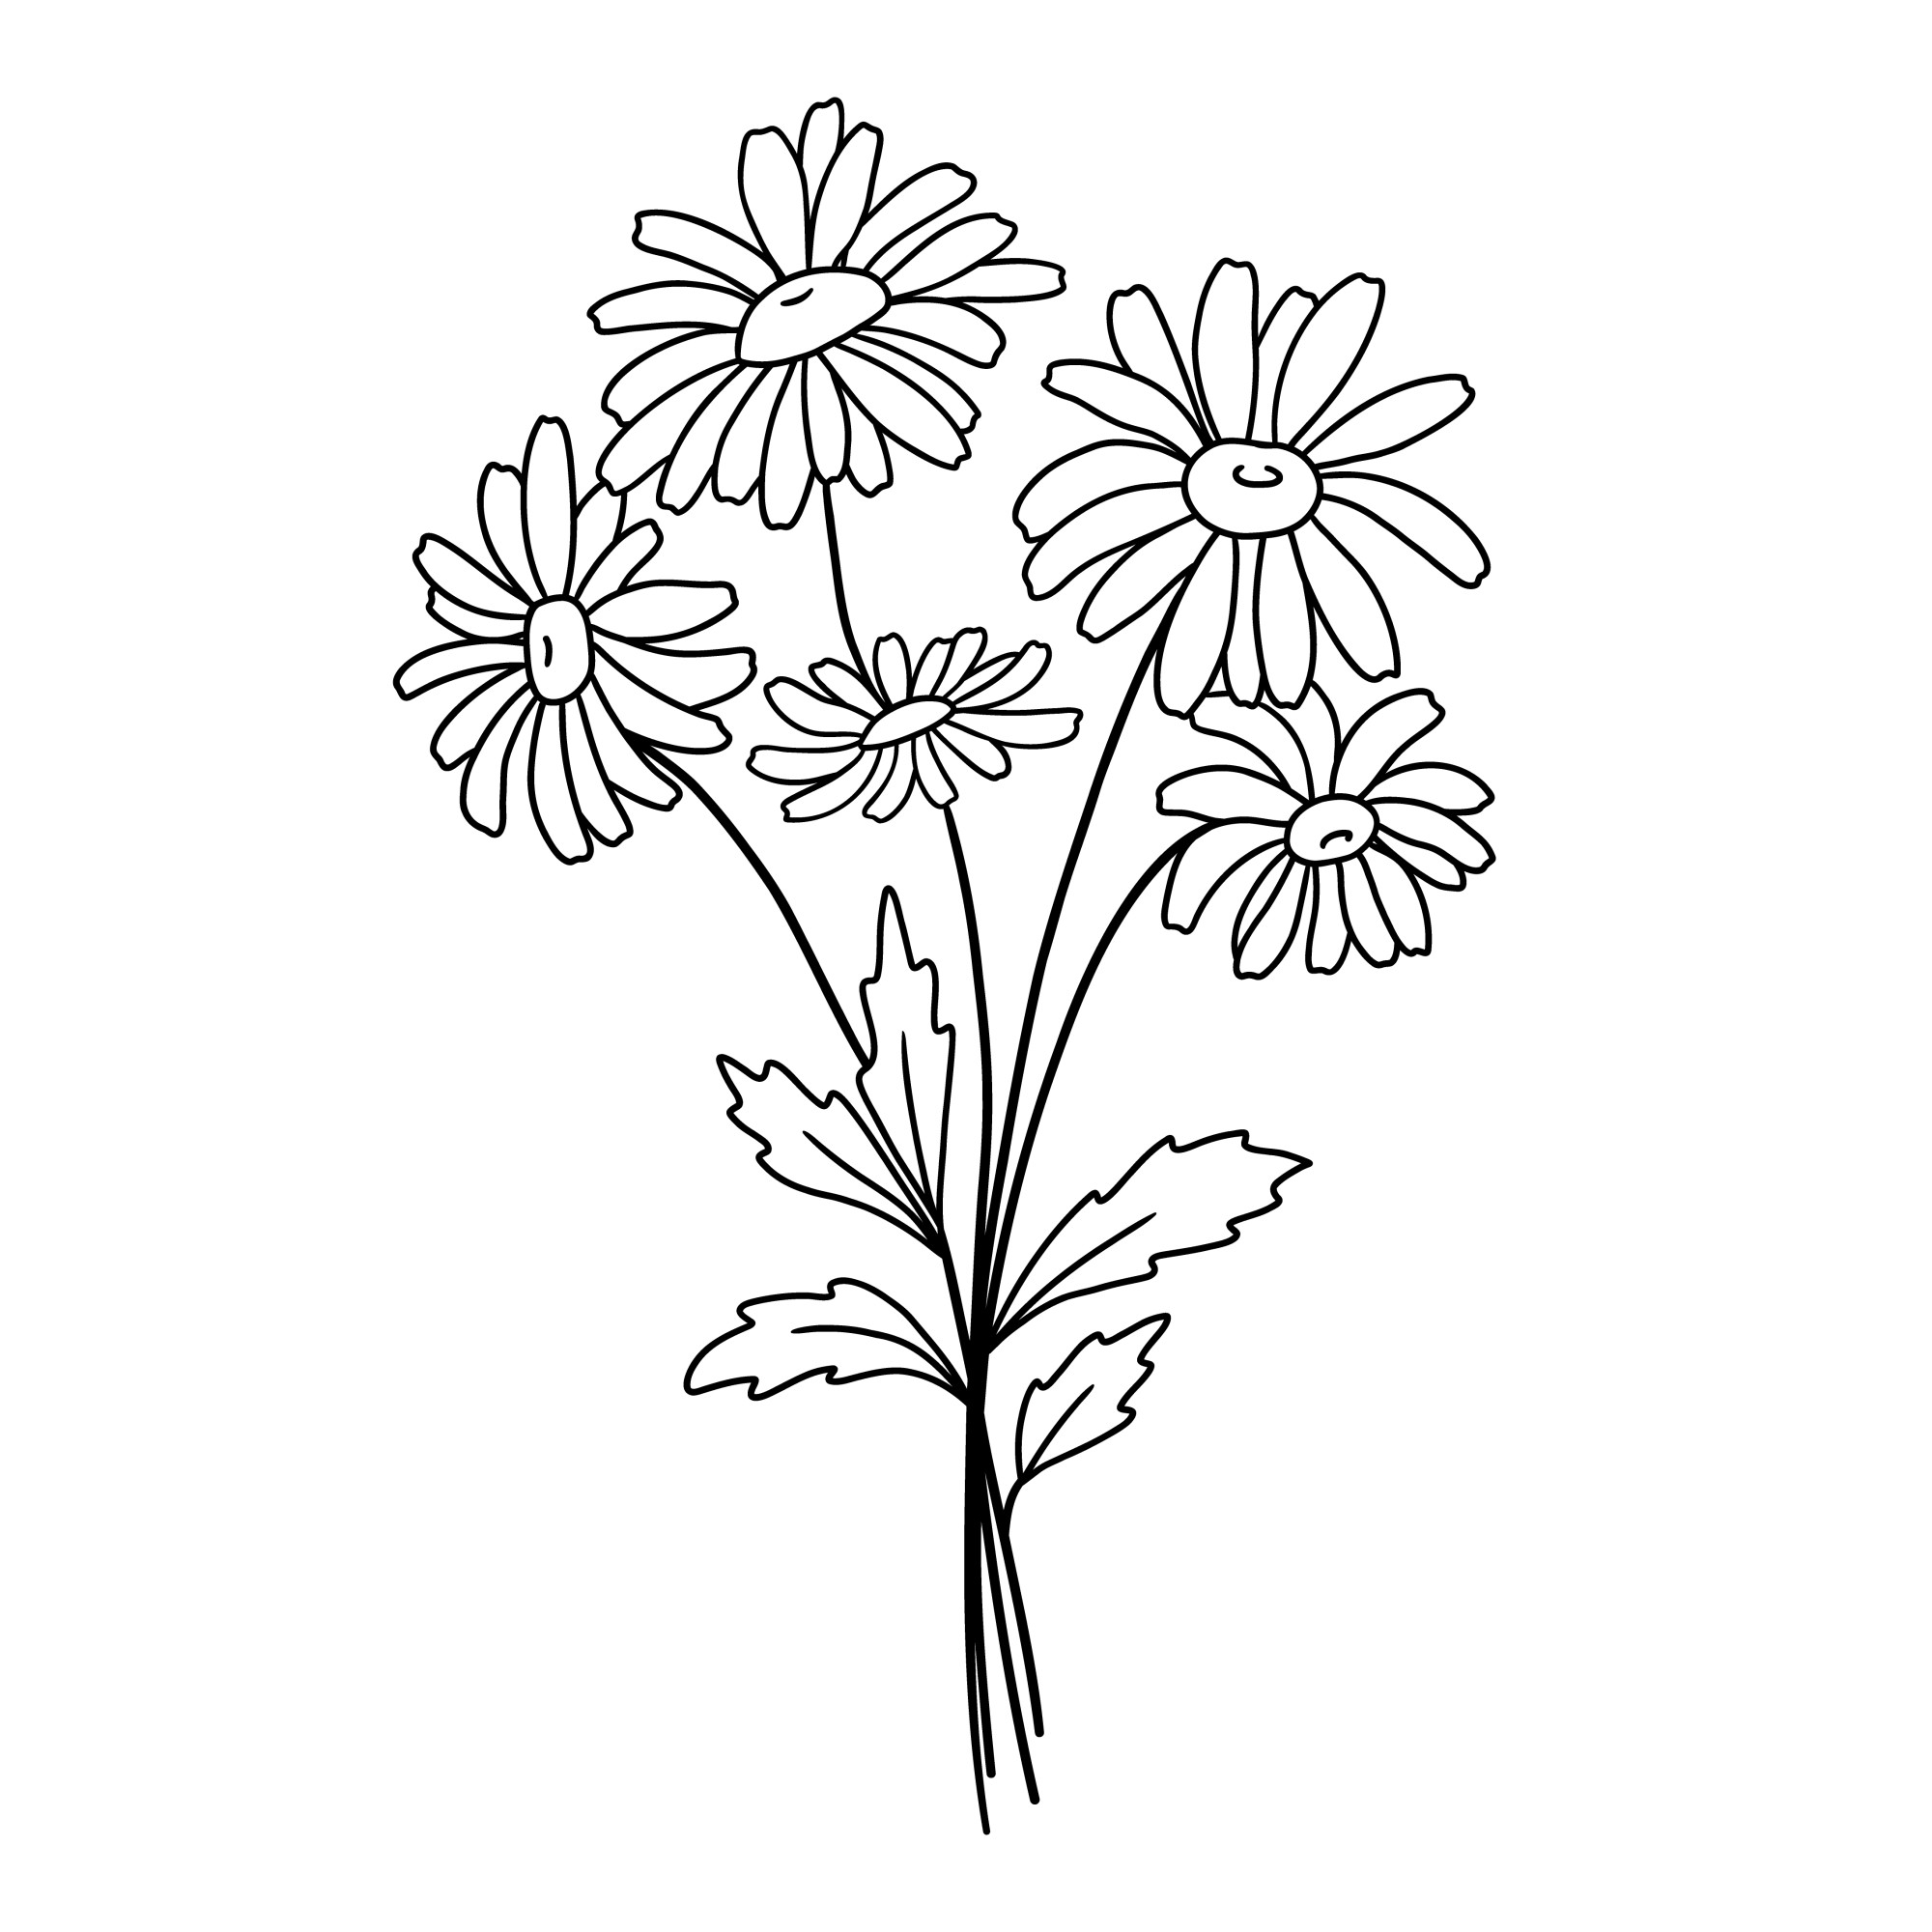 Раскраска для детей: букет маленькие цветы ромашки